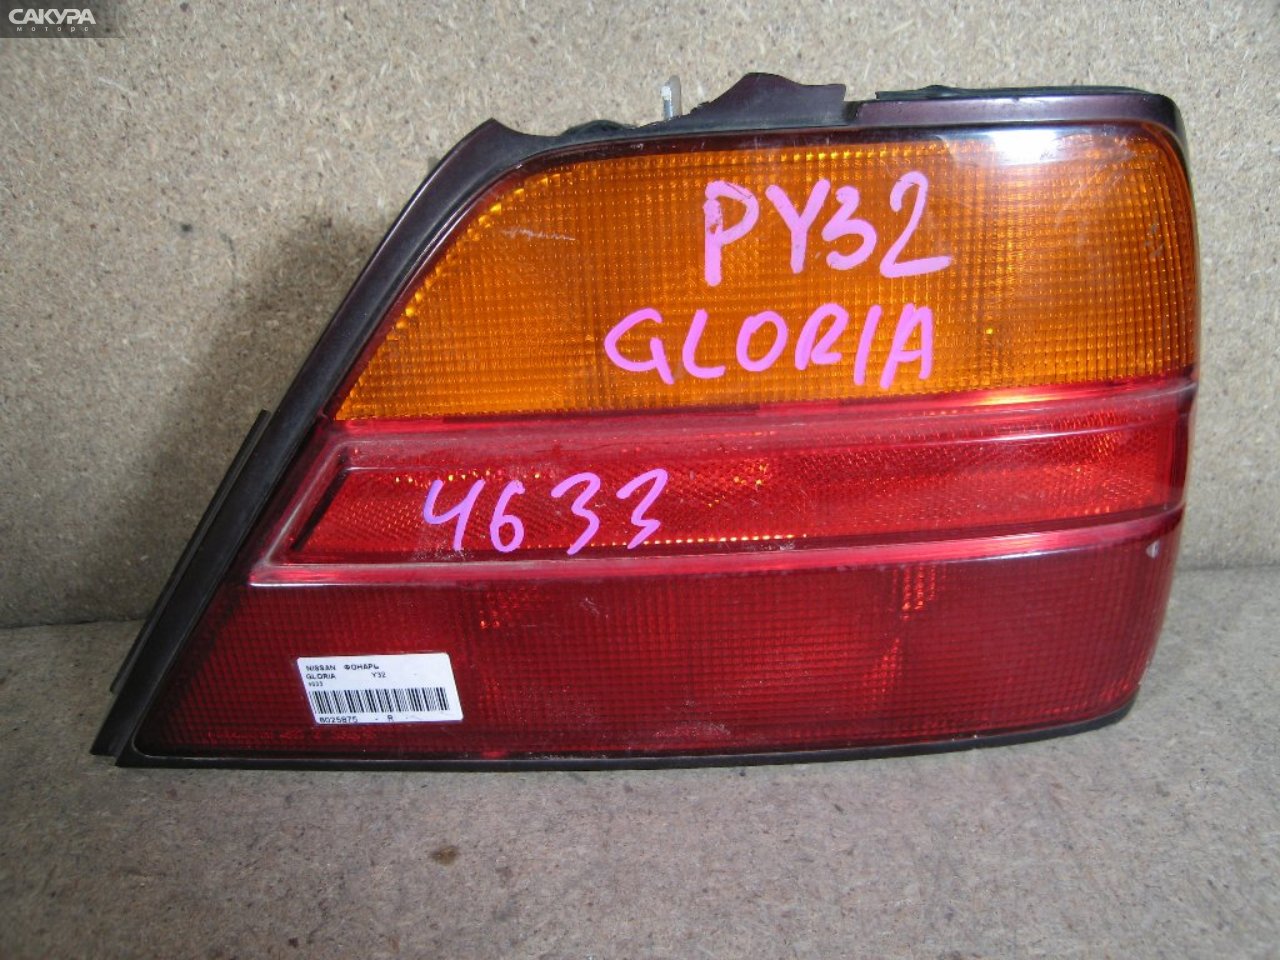 Фонарь стоп-сигнала правый Nissan Gloria Y32 4633: купить в Сакура Абакан.